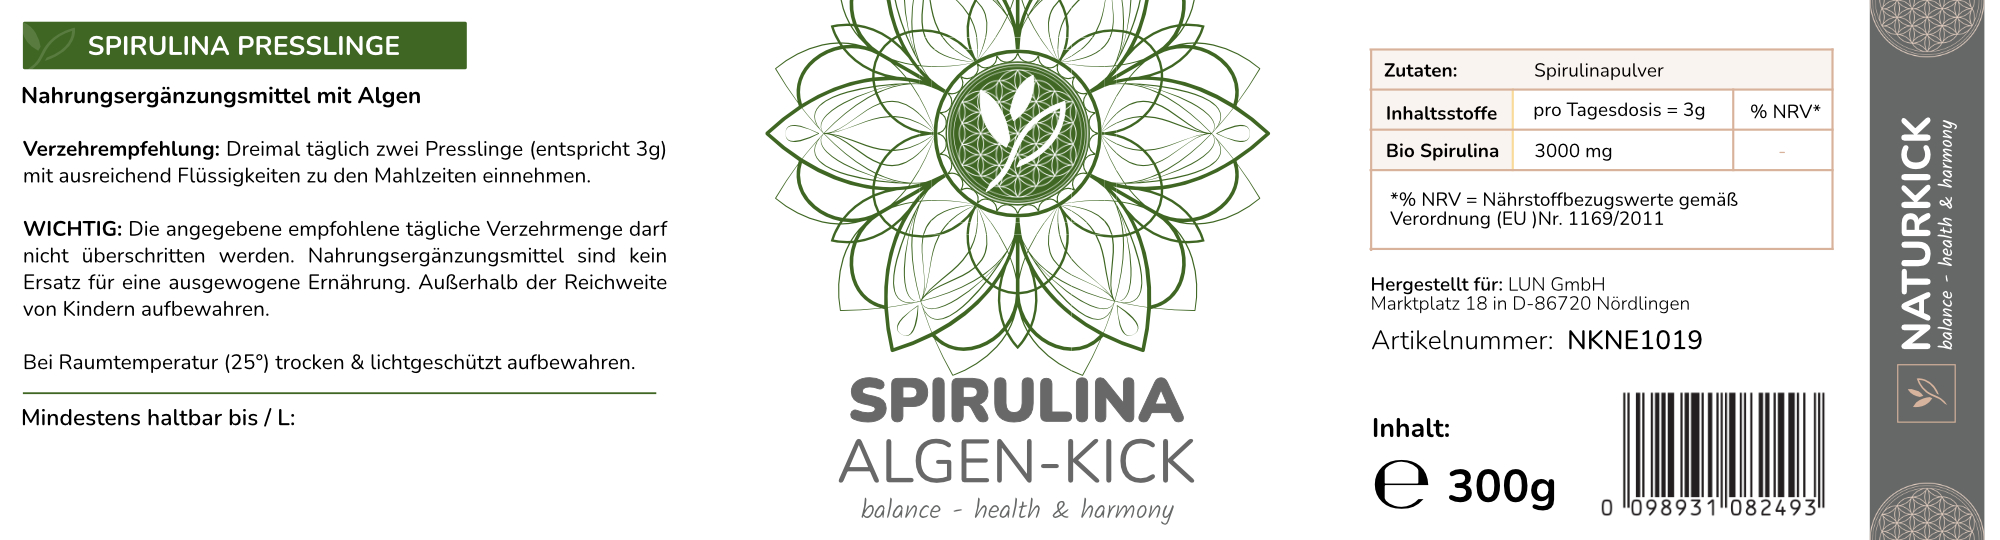 NATURKICK Spirulina Algen-Kick Presslinge ca. 600 Stück 300g 100% Spirulina ohne Zusätze Spirulina Tabletten Hochdosiert, Vegane Proteine, Mineralstoffe, Blaualge, Natur-Manufaktur, Reine Spirulina Algen aus kontrolliert Anbau